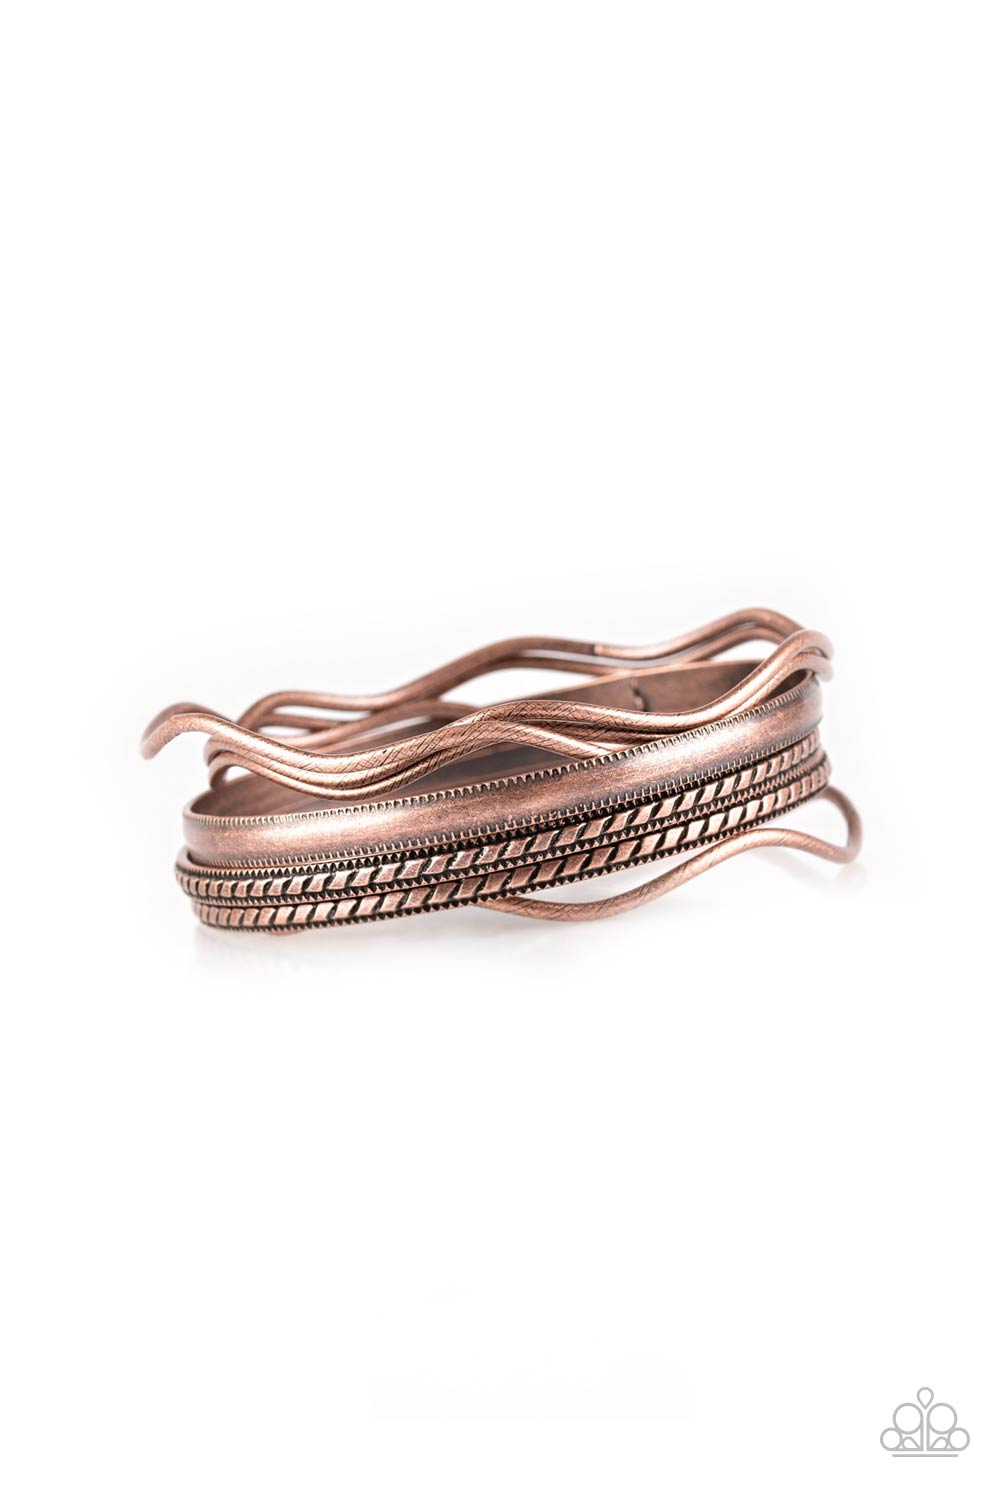 Zesty Zimbabwe Bracelets- Copper